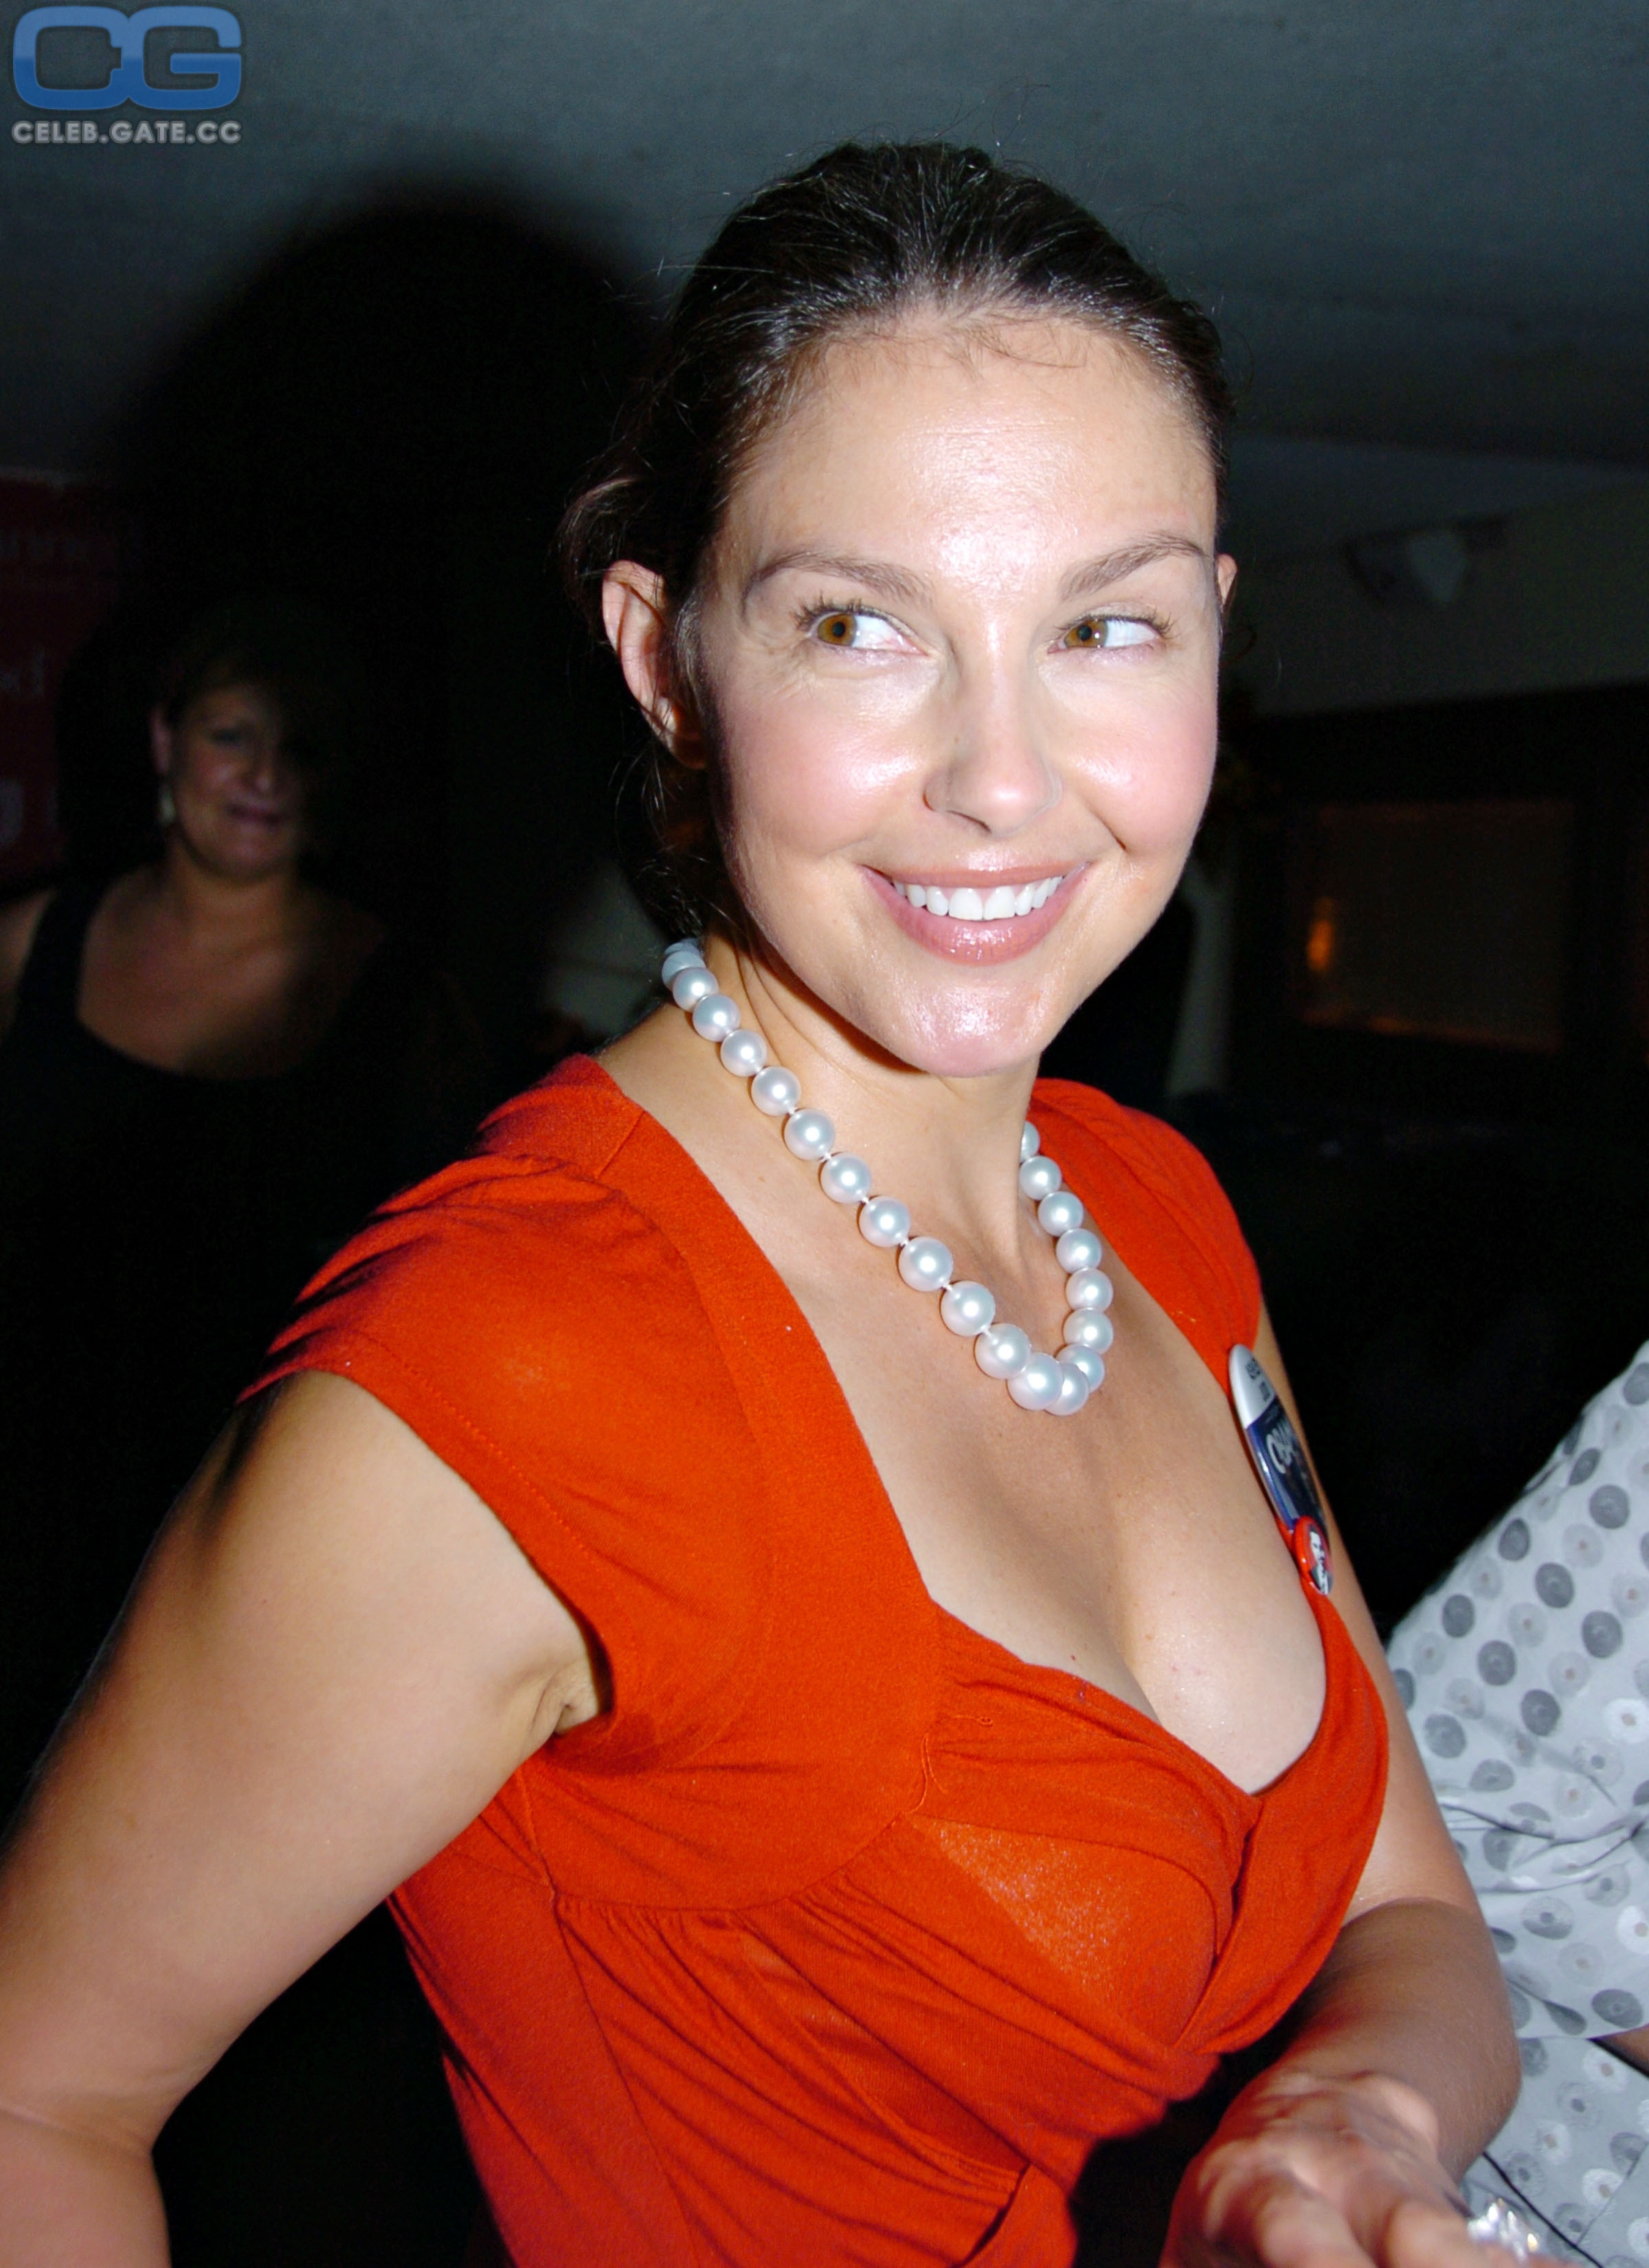 Ashley Judd 